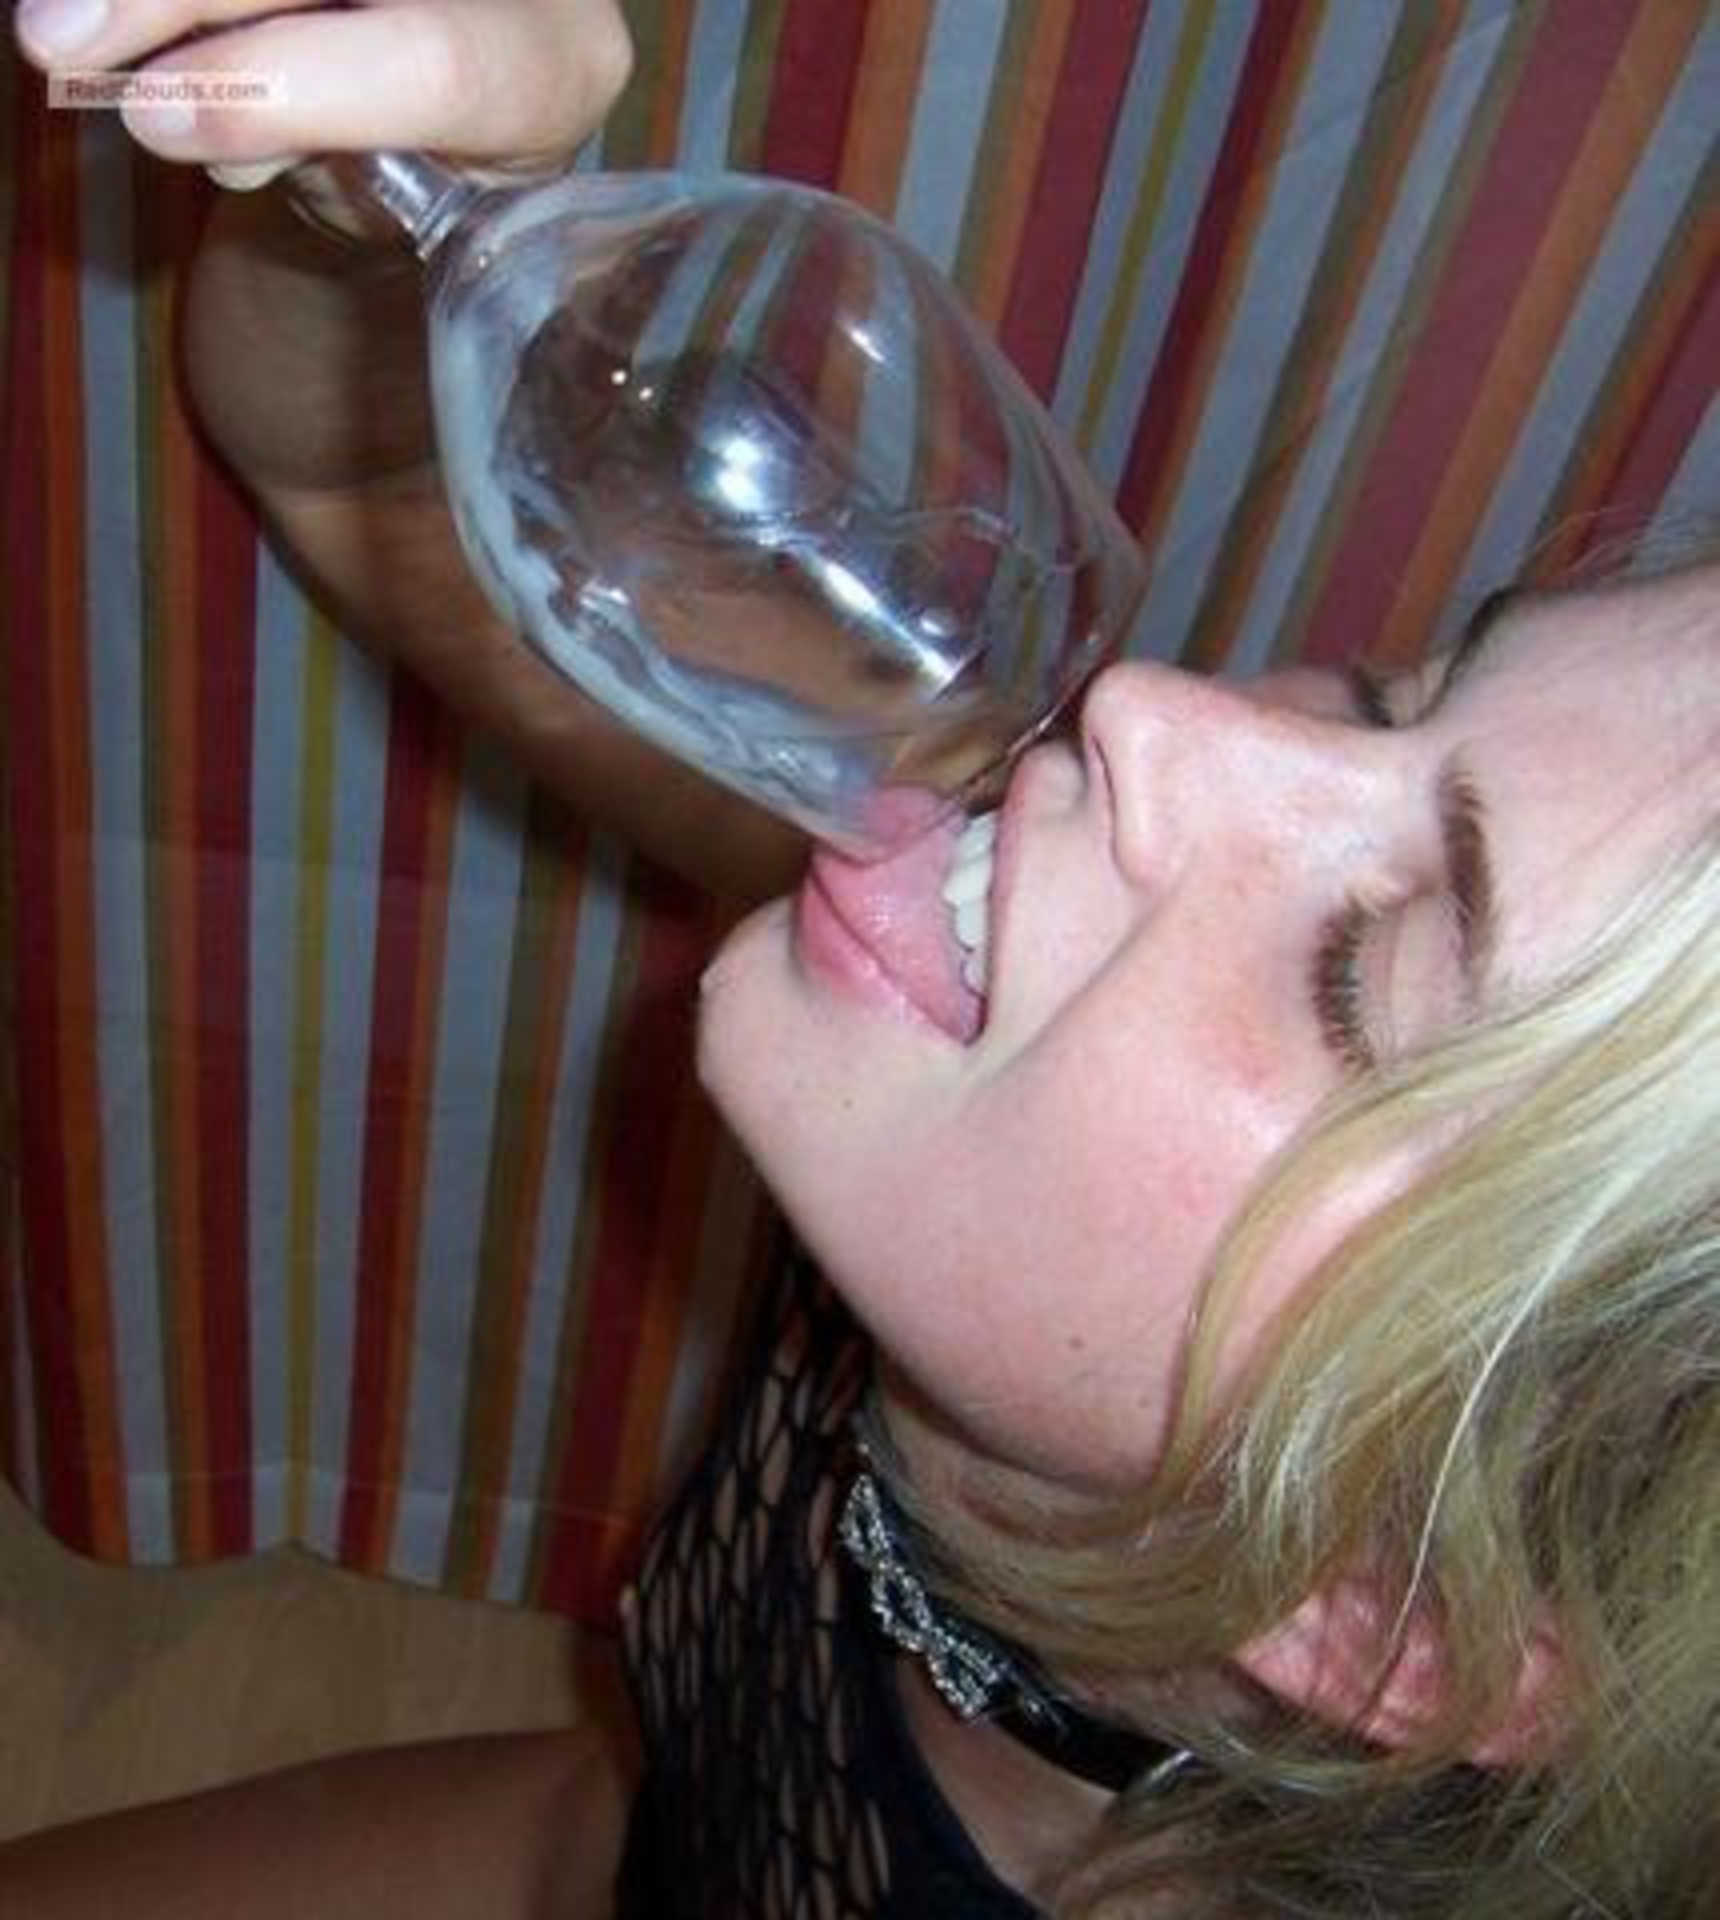 Drinkers semen photo